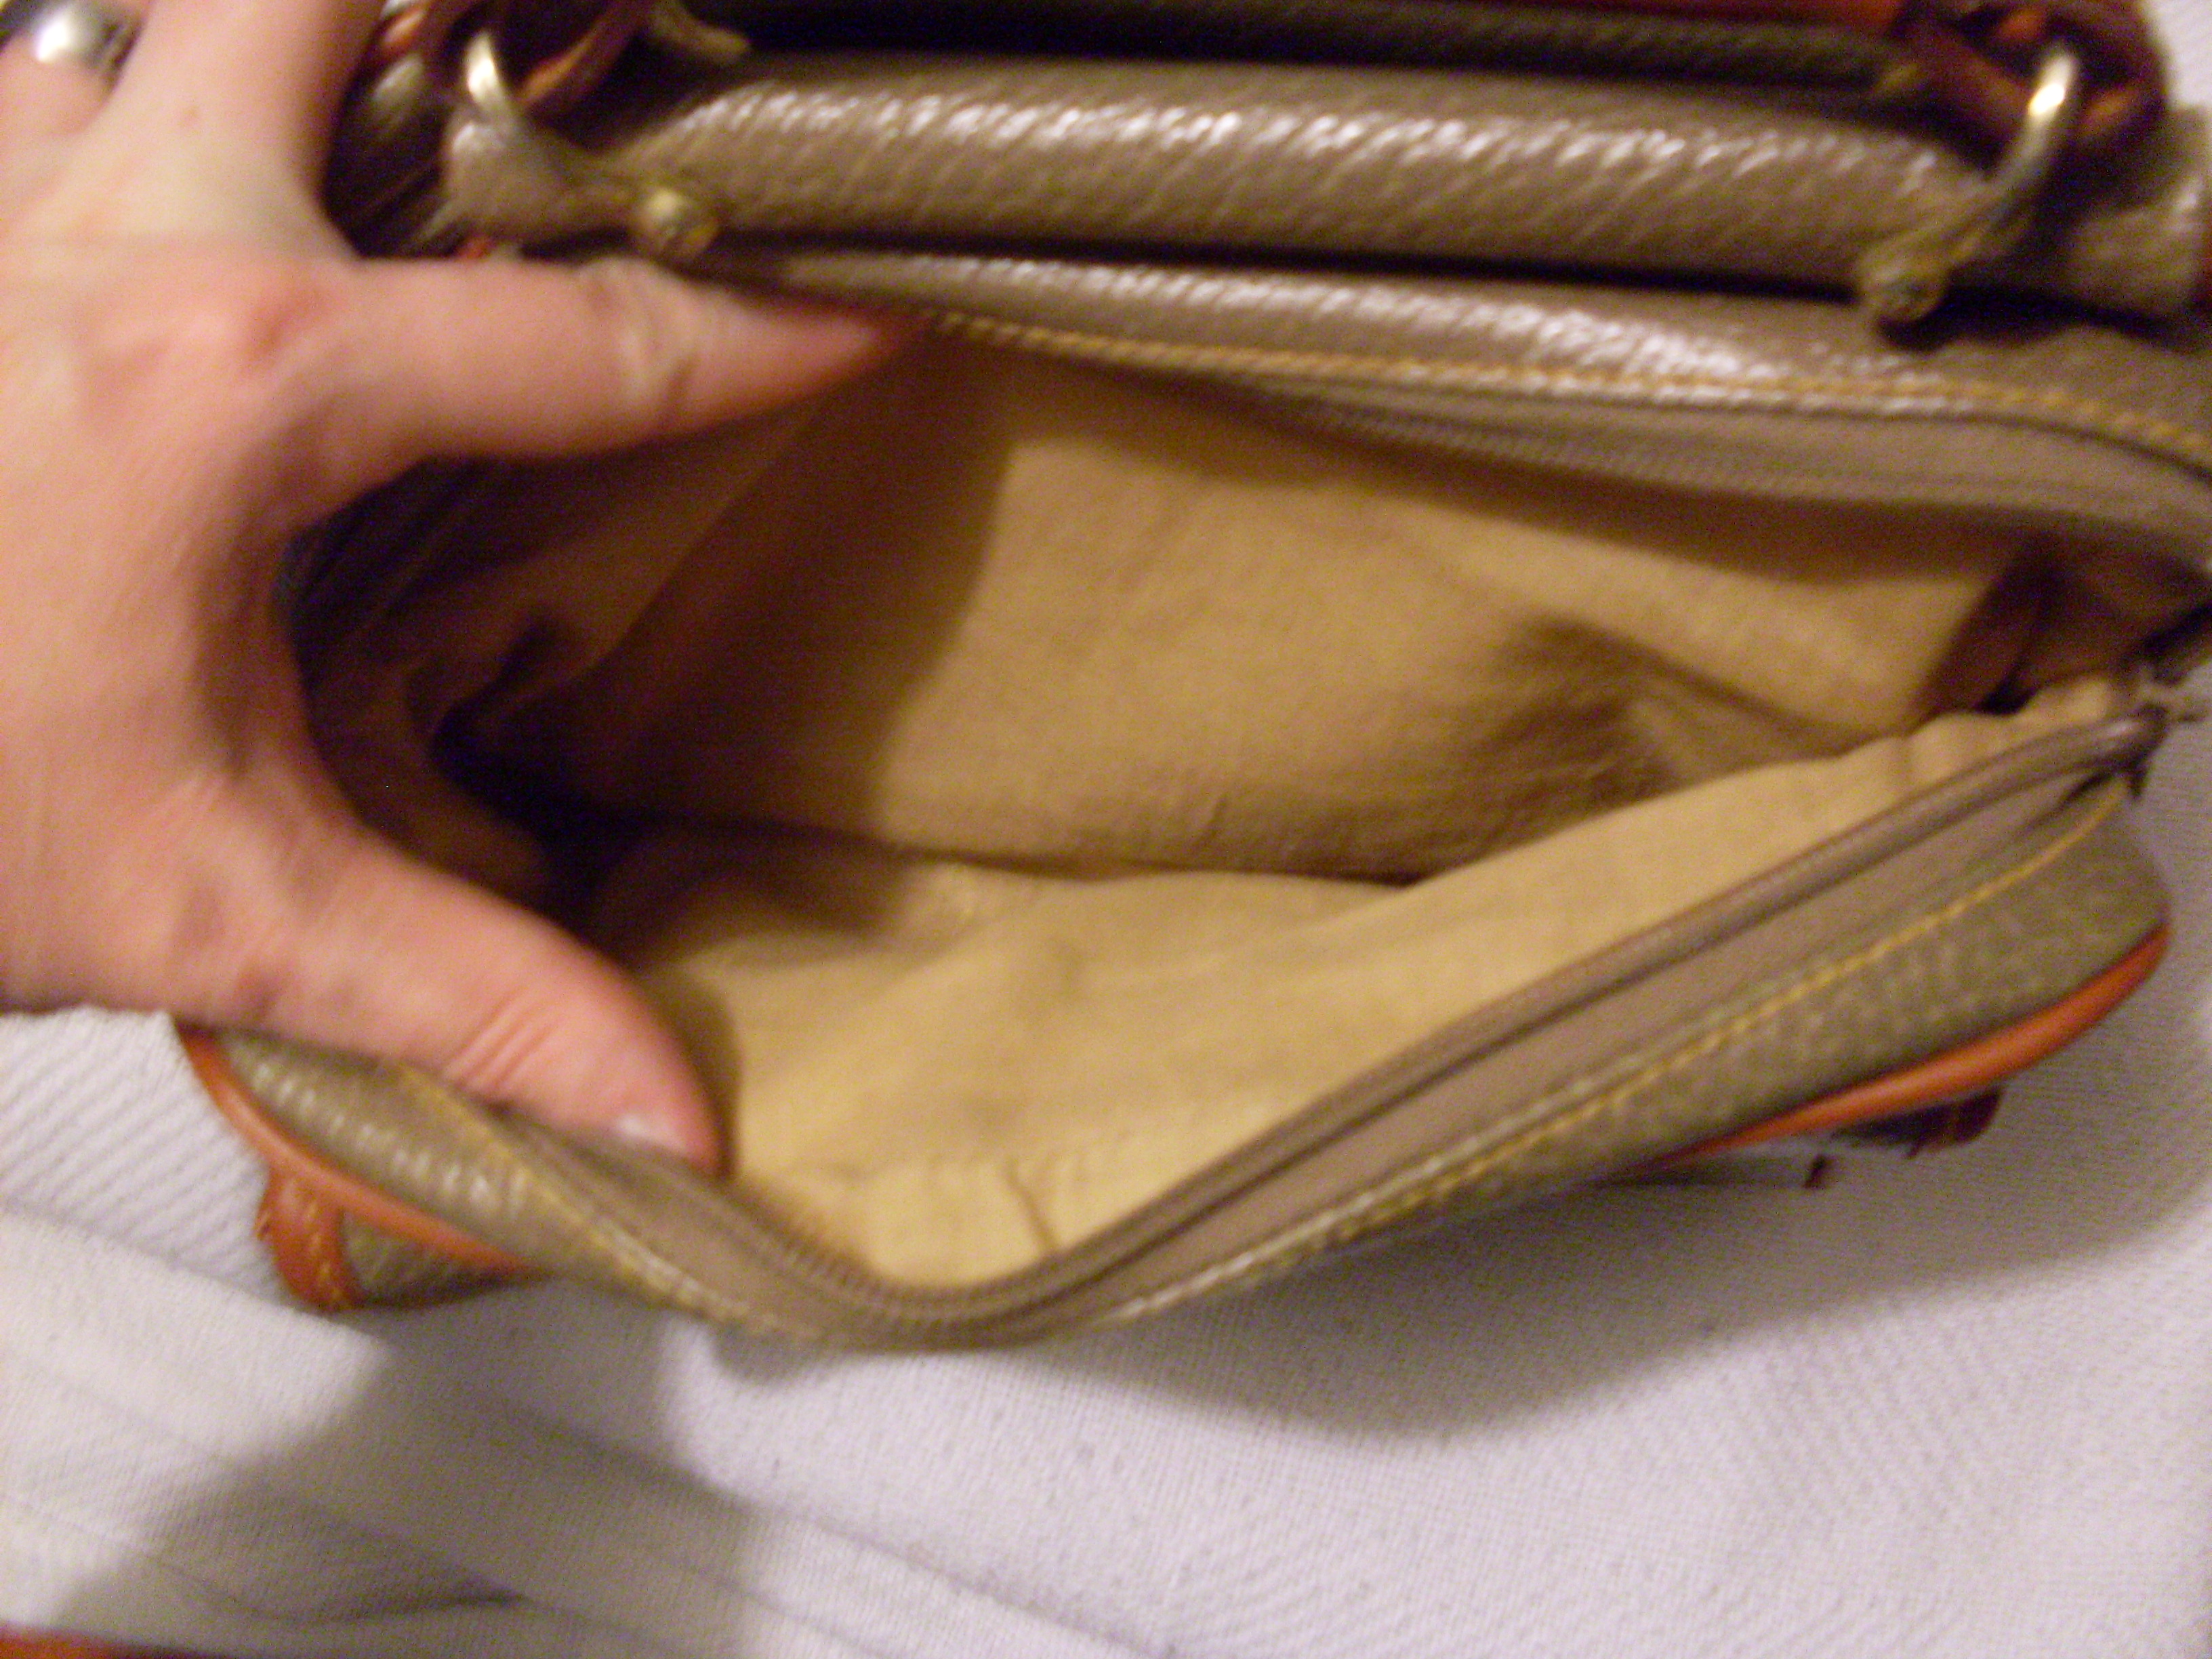 I Bought A Fake Vintage Dooney & Bourke Bag - Accidental Reseller